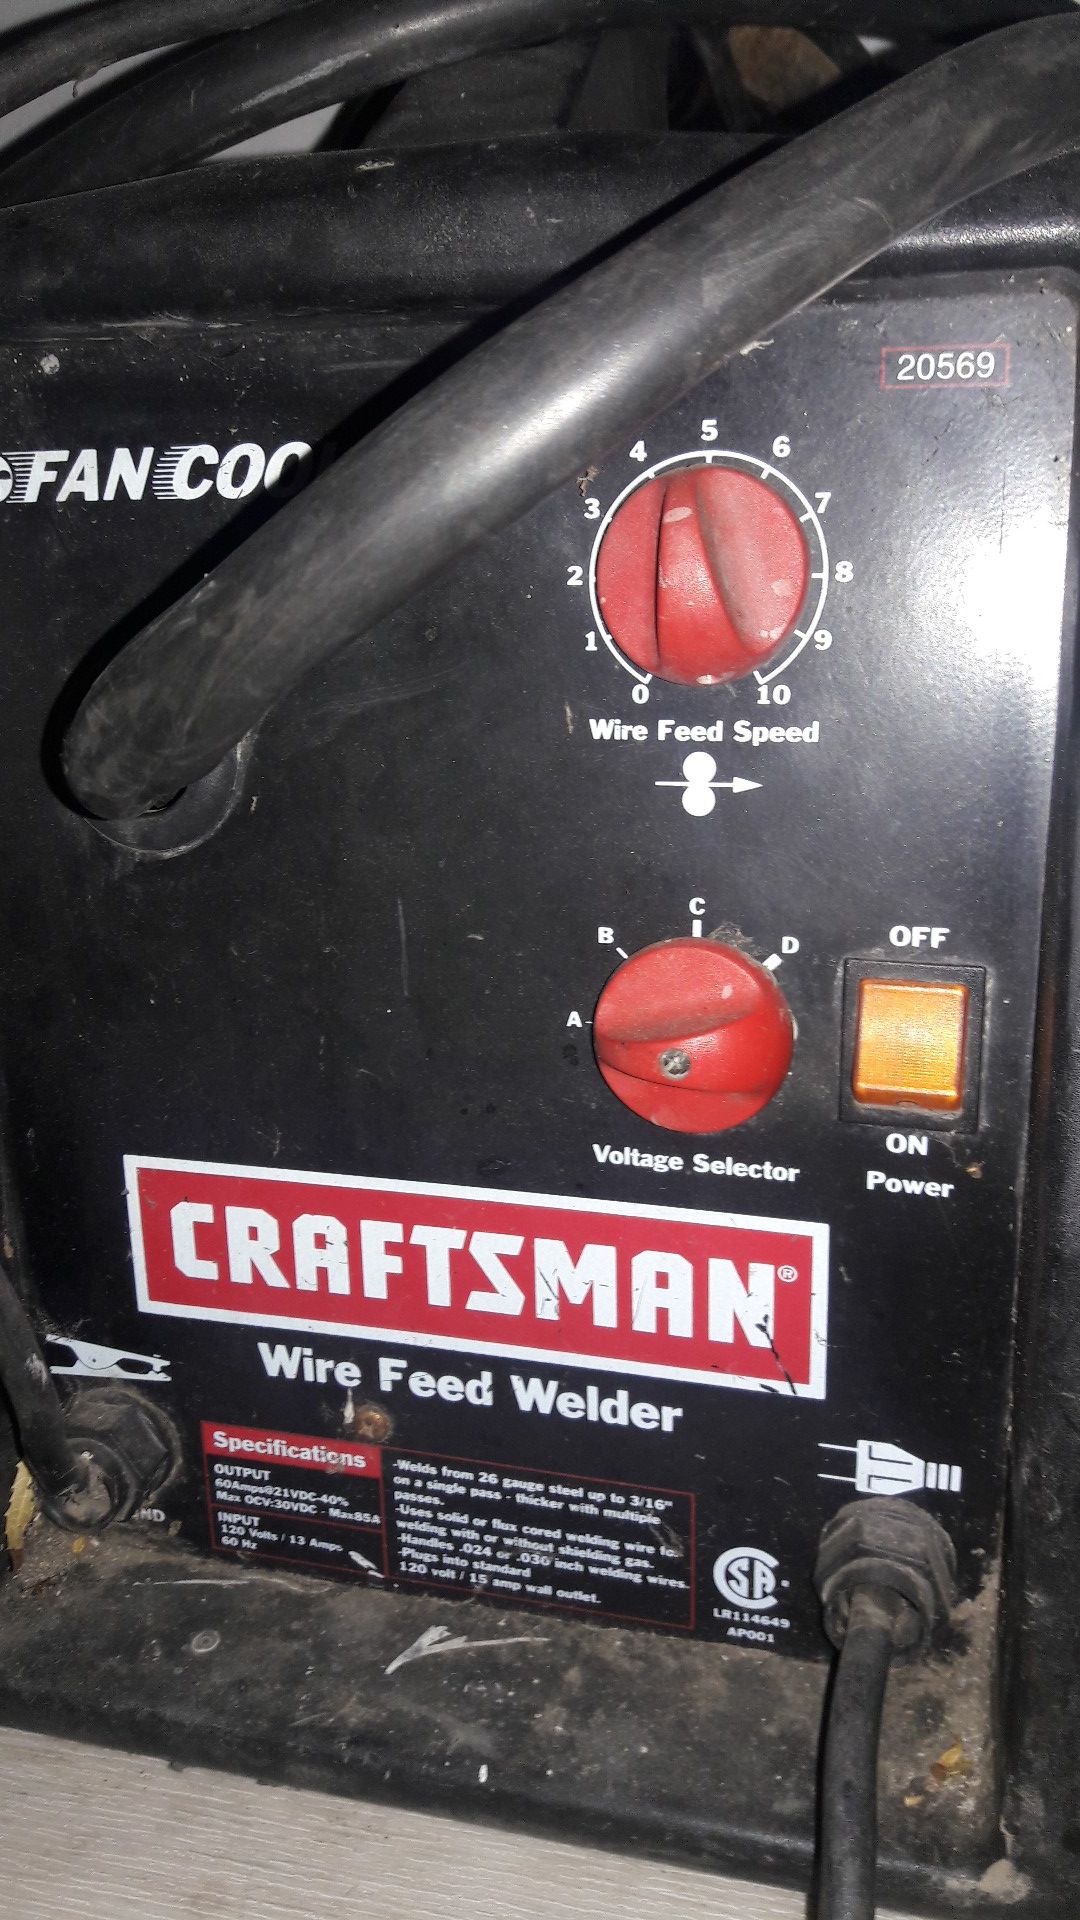 Craftsman welder fan cooled wire feed